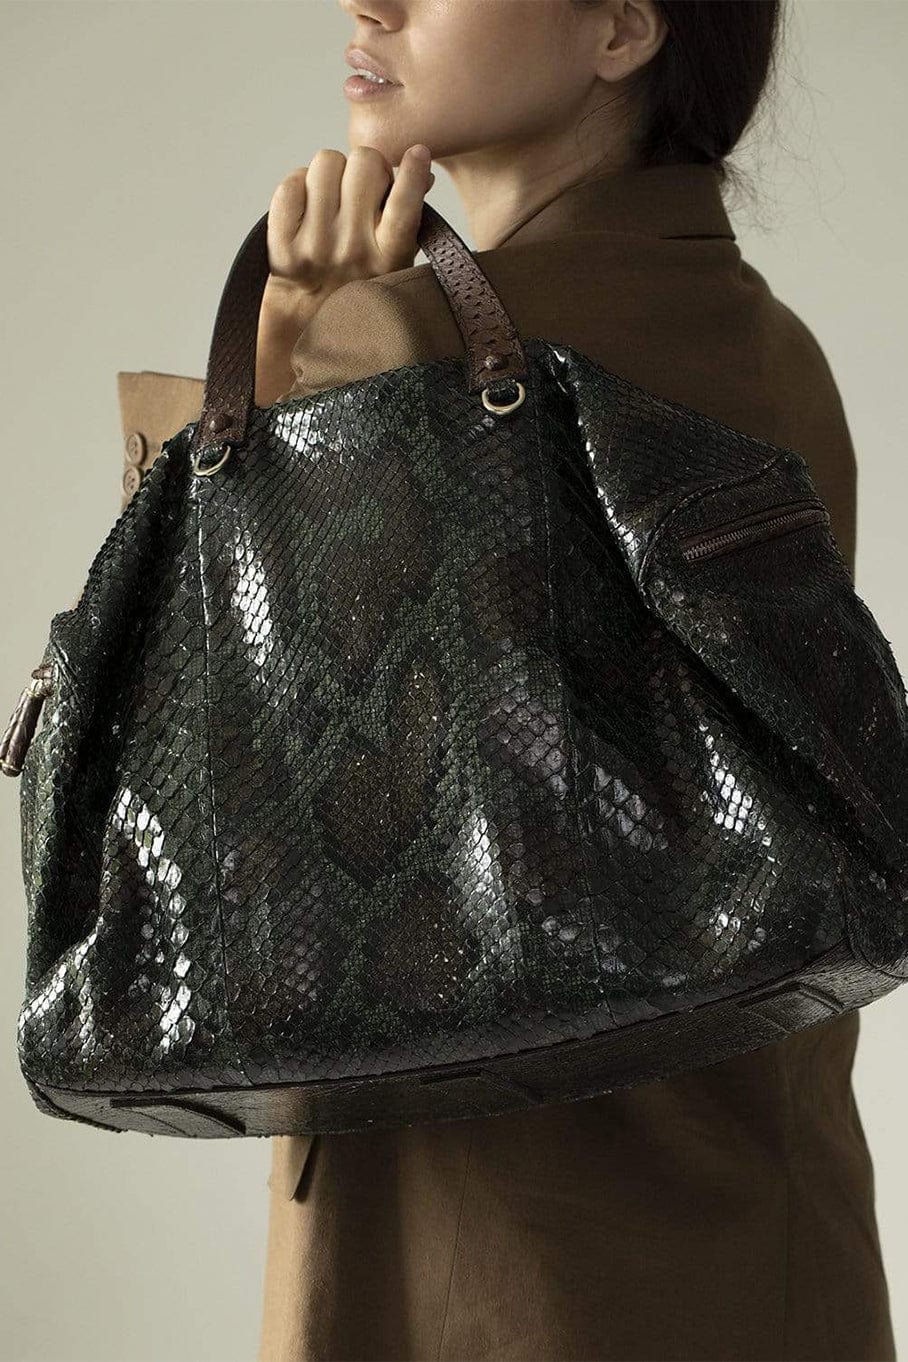 python handle bag